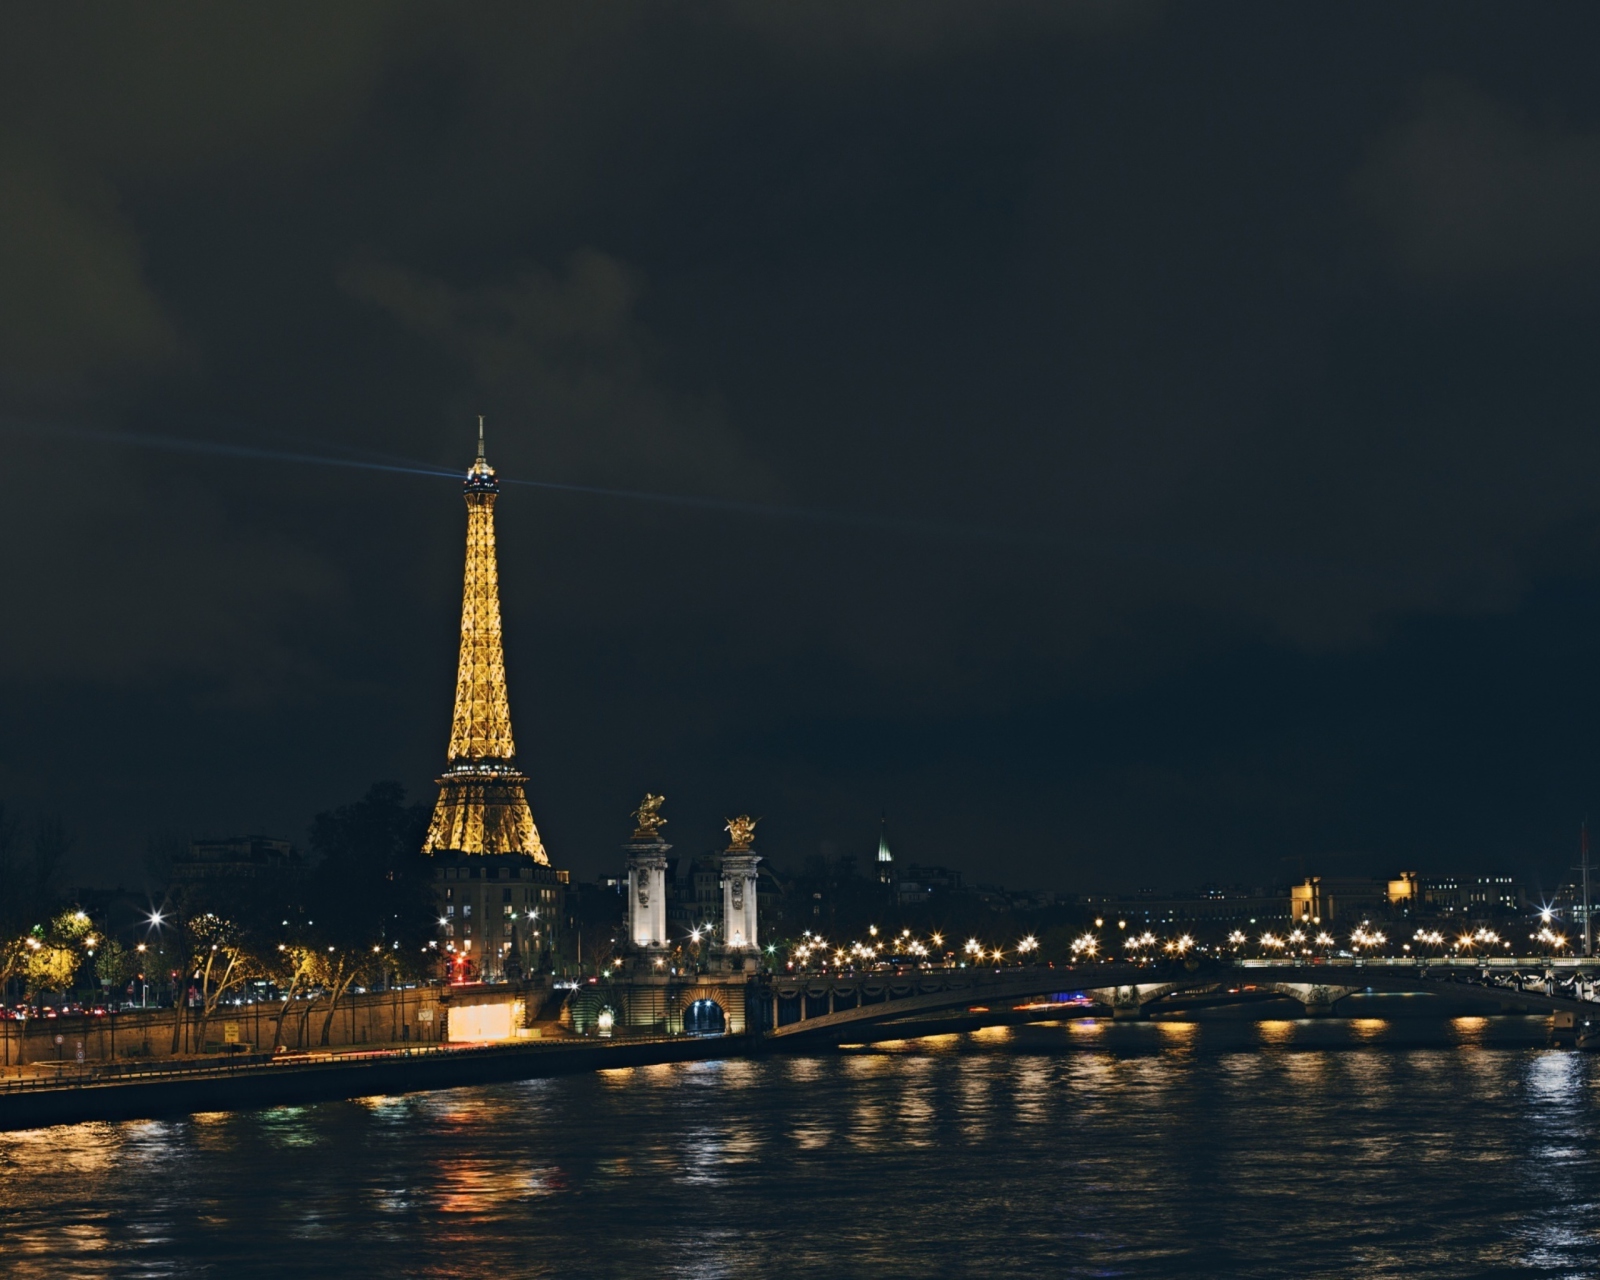 Das Eiffel Tower In Paris France Wallpaper 1600x1280